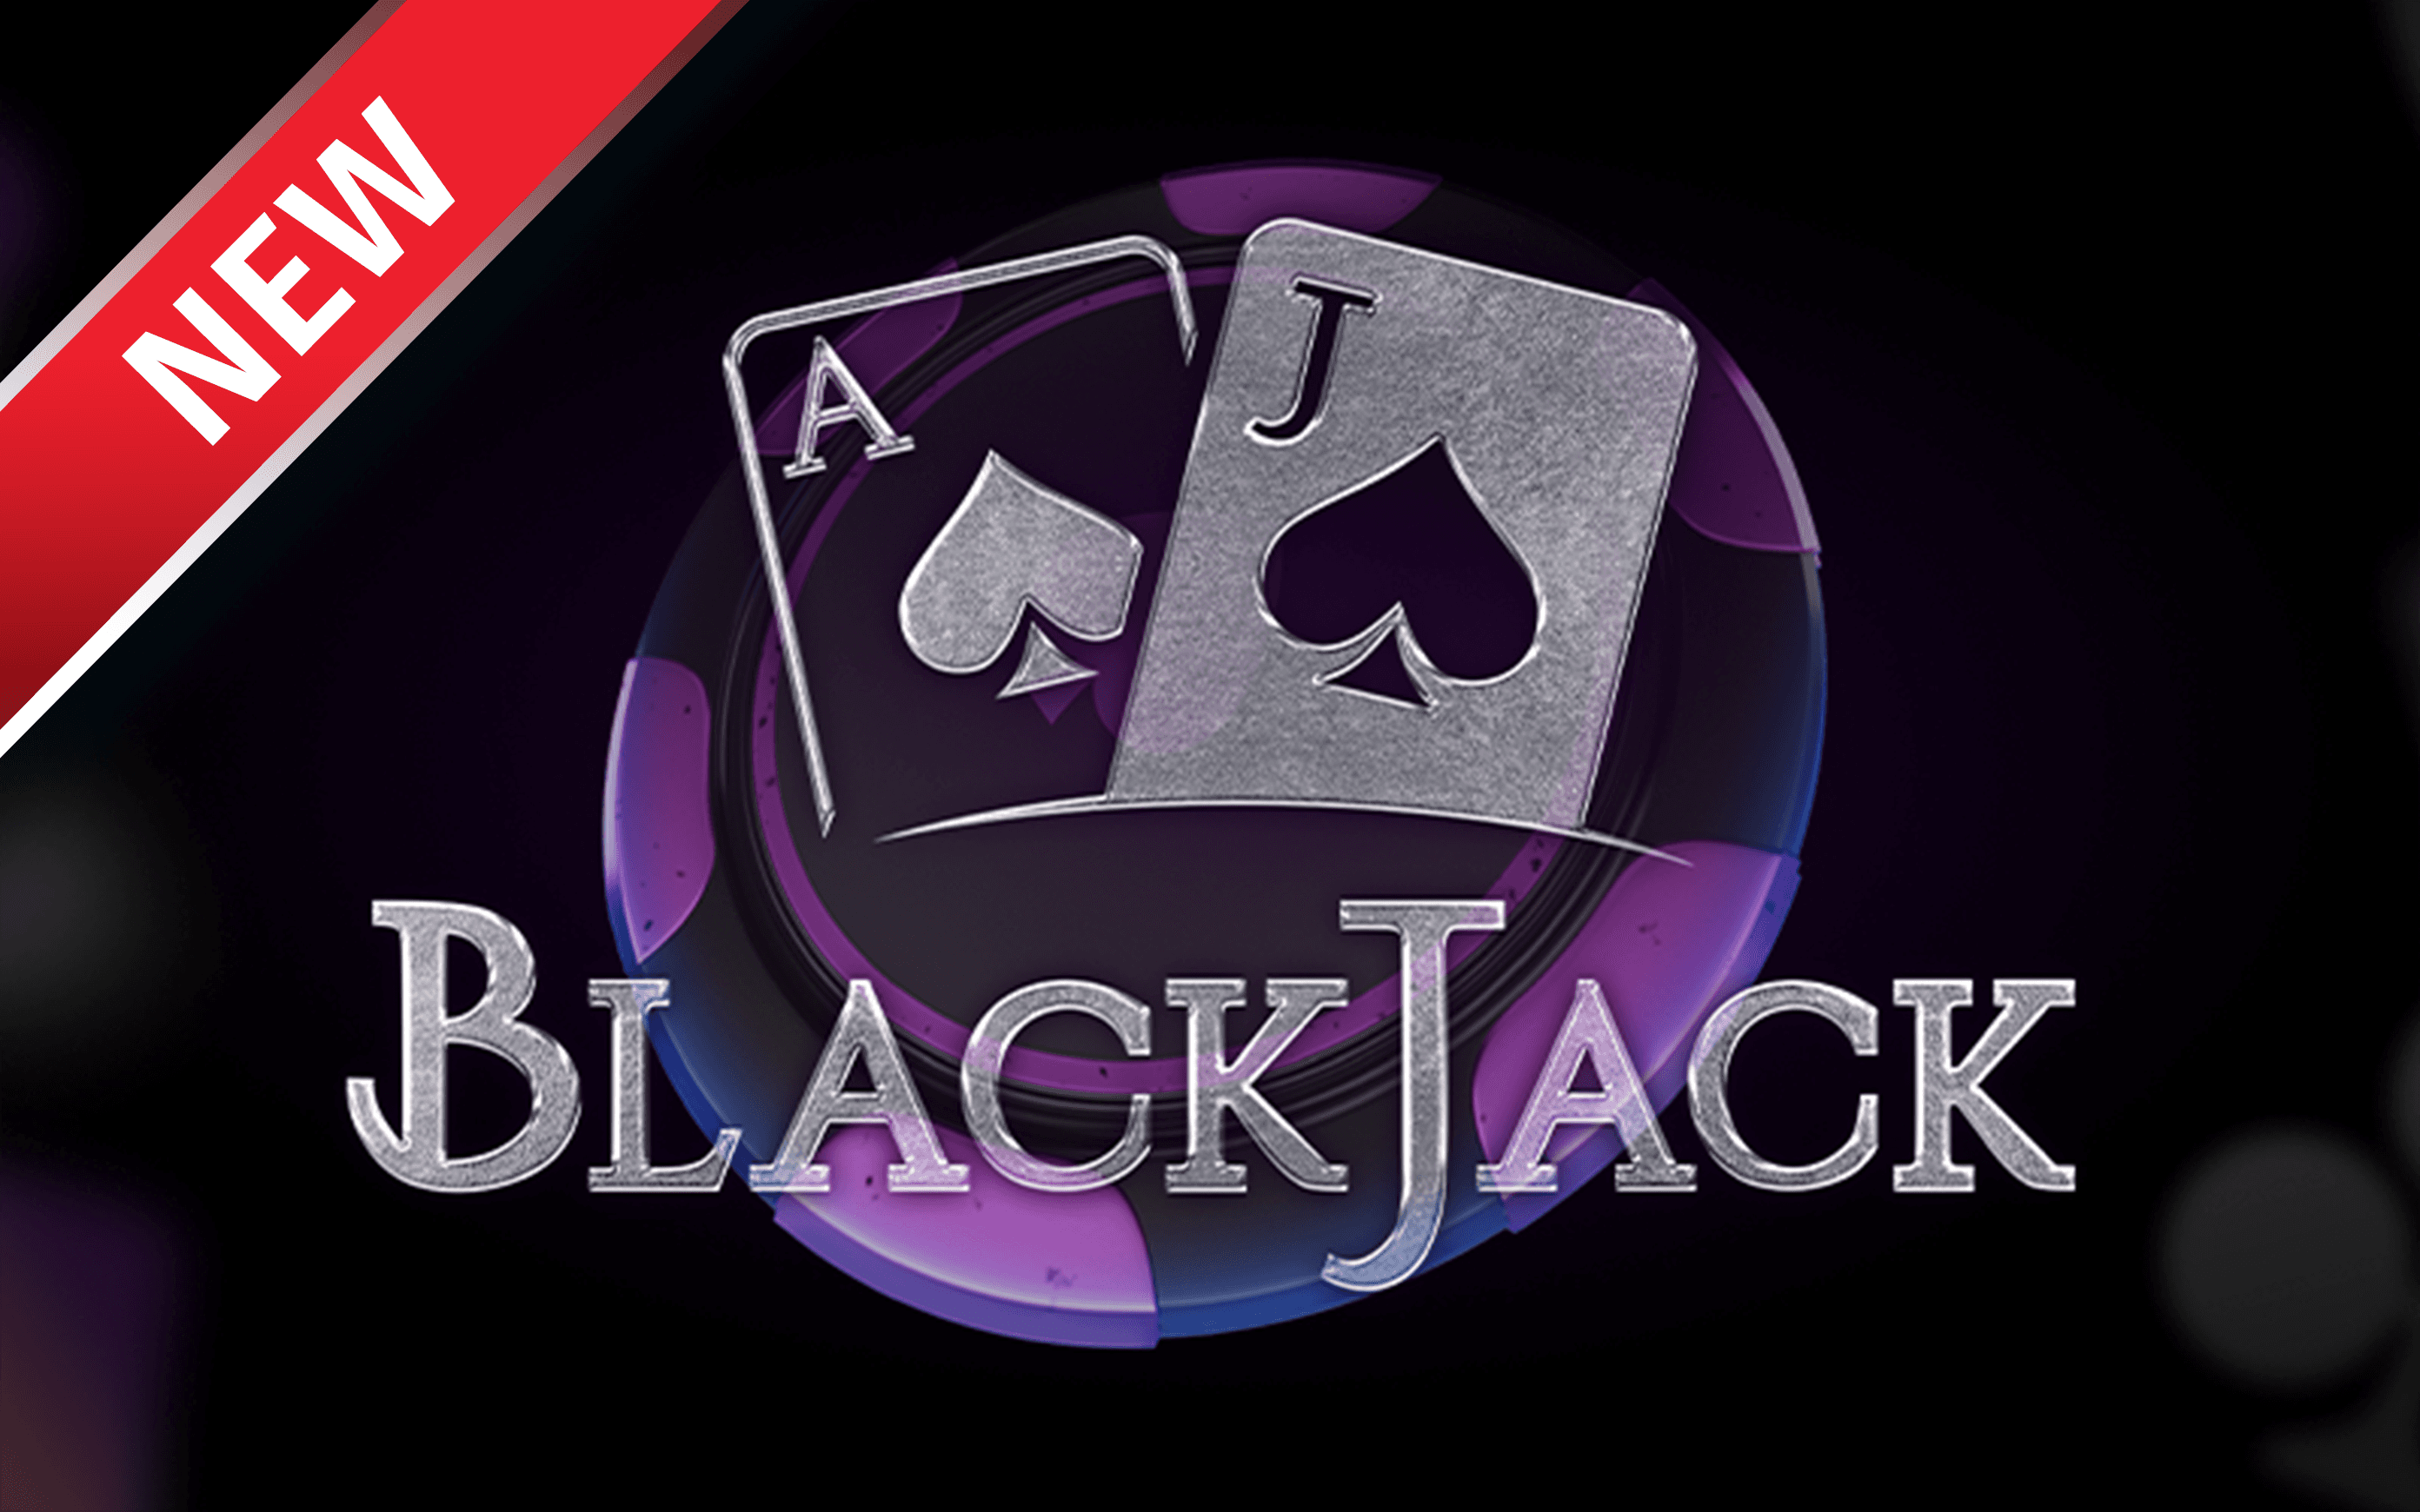 Starcasino.be online casino üzerinden BlackJack oynayın